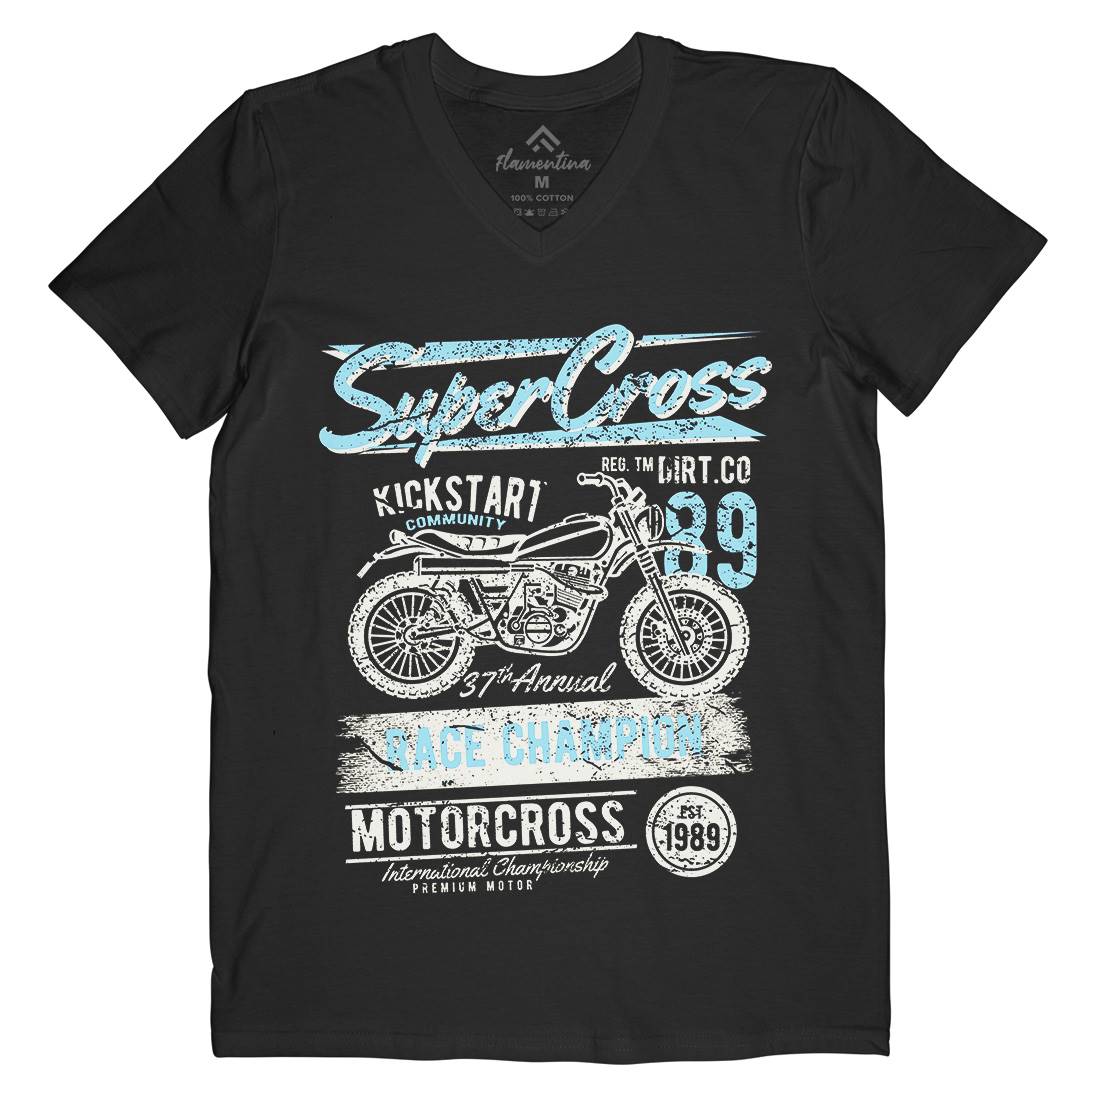 Super Cross Mens V-Neck T-Shirt Motorcycles A165